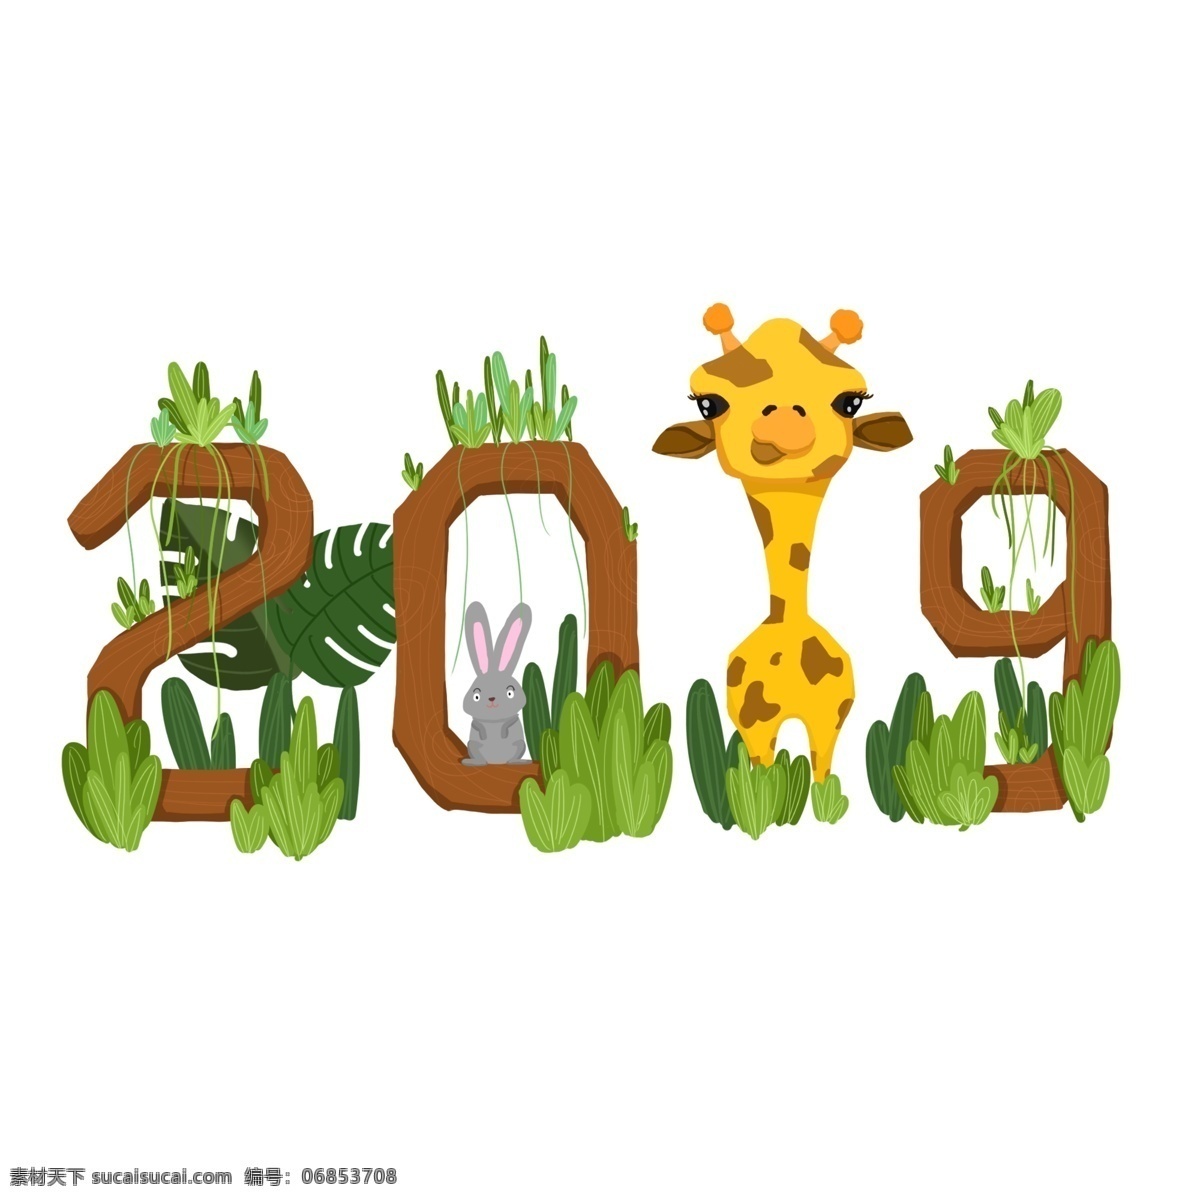 2019 植物 动物 场景 商用 长颈鹿 兔子